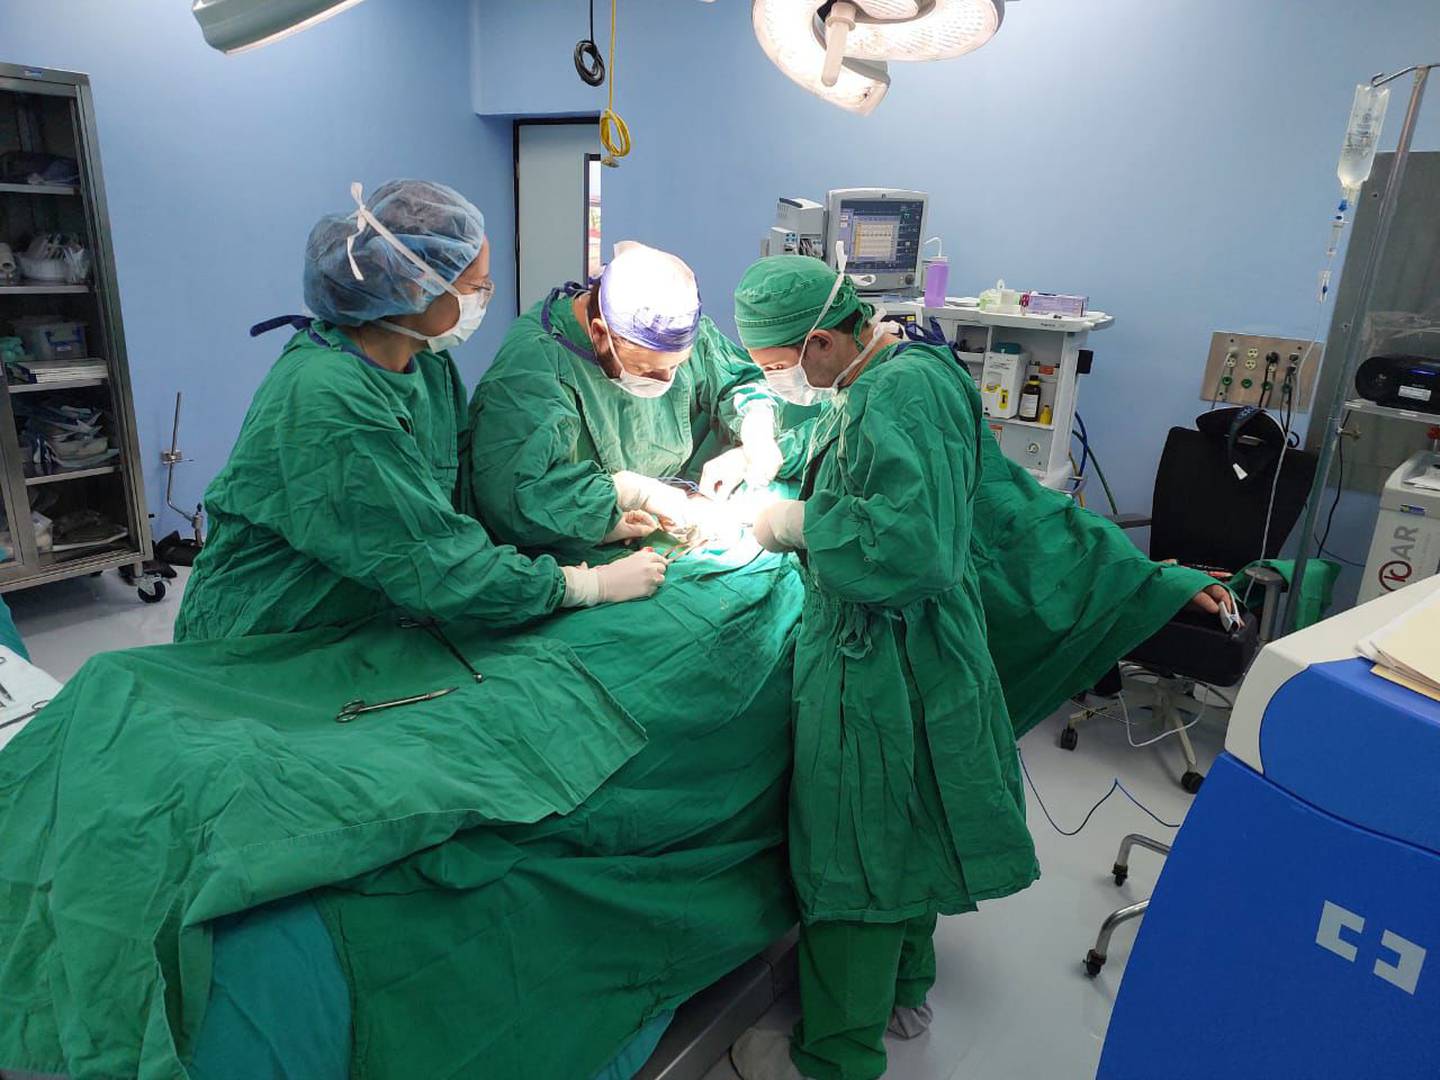 Quirófanos. Jornadas quirúrgicas en el hospital San Vito ayudan a reducir listas de espera